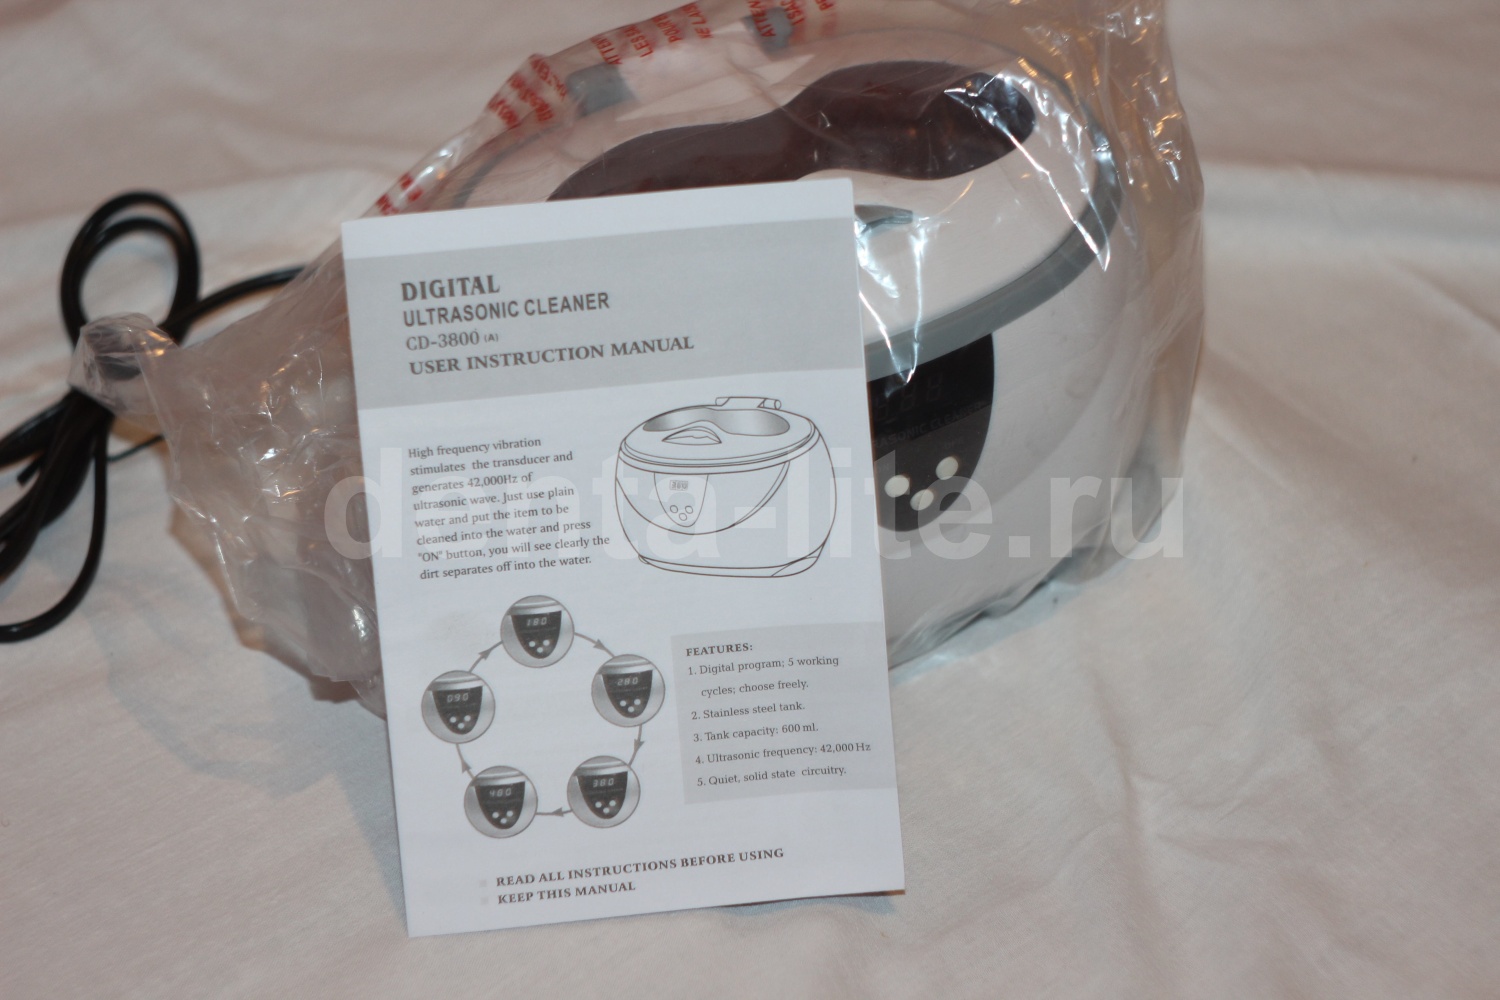 Распакованная ультразвуковая ванна в пакете с руководством Ultrasonic cleaner 3800A 